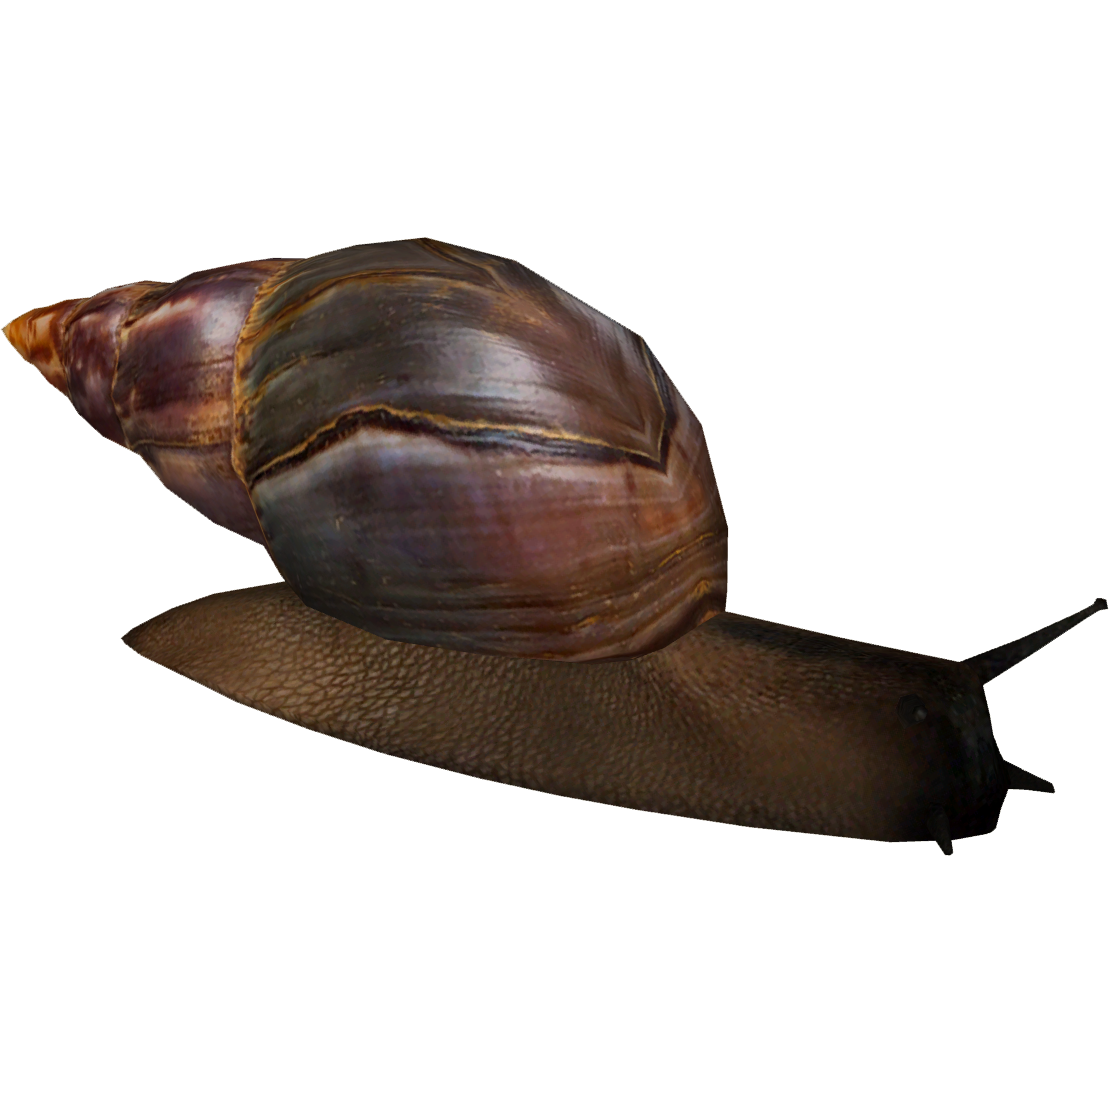 Snails Download PNG Image